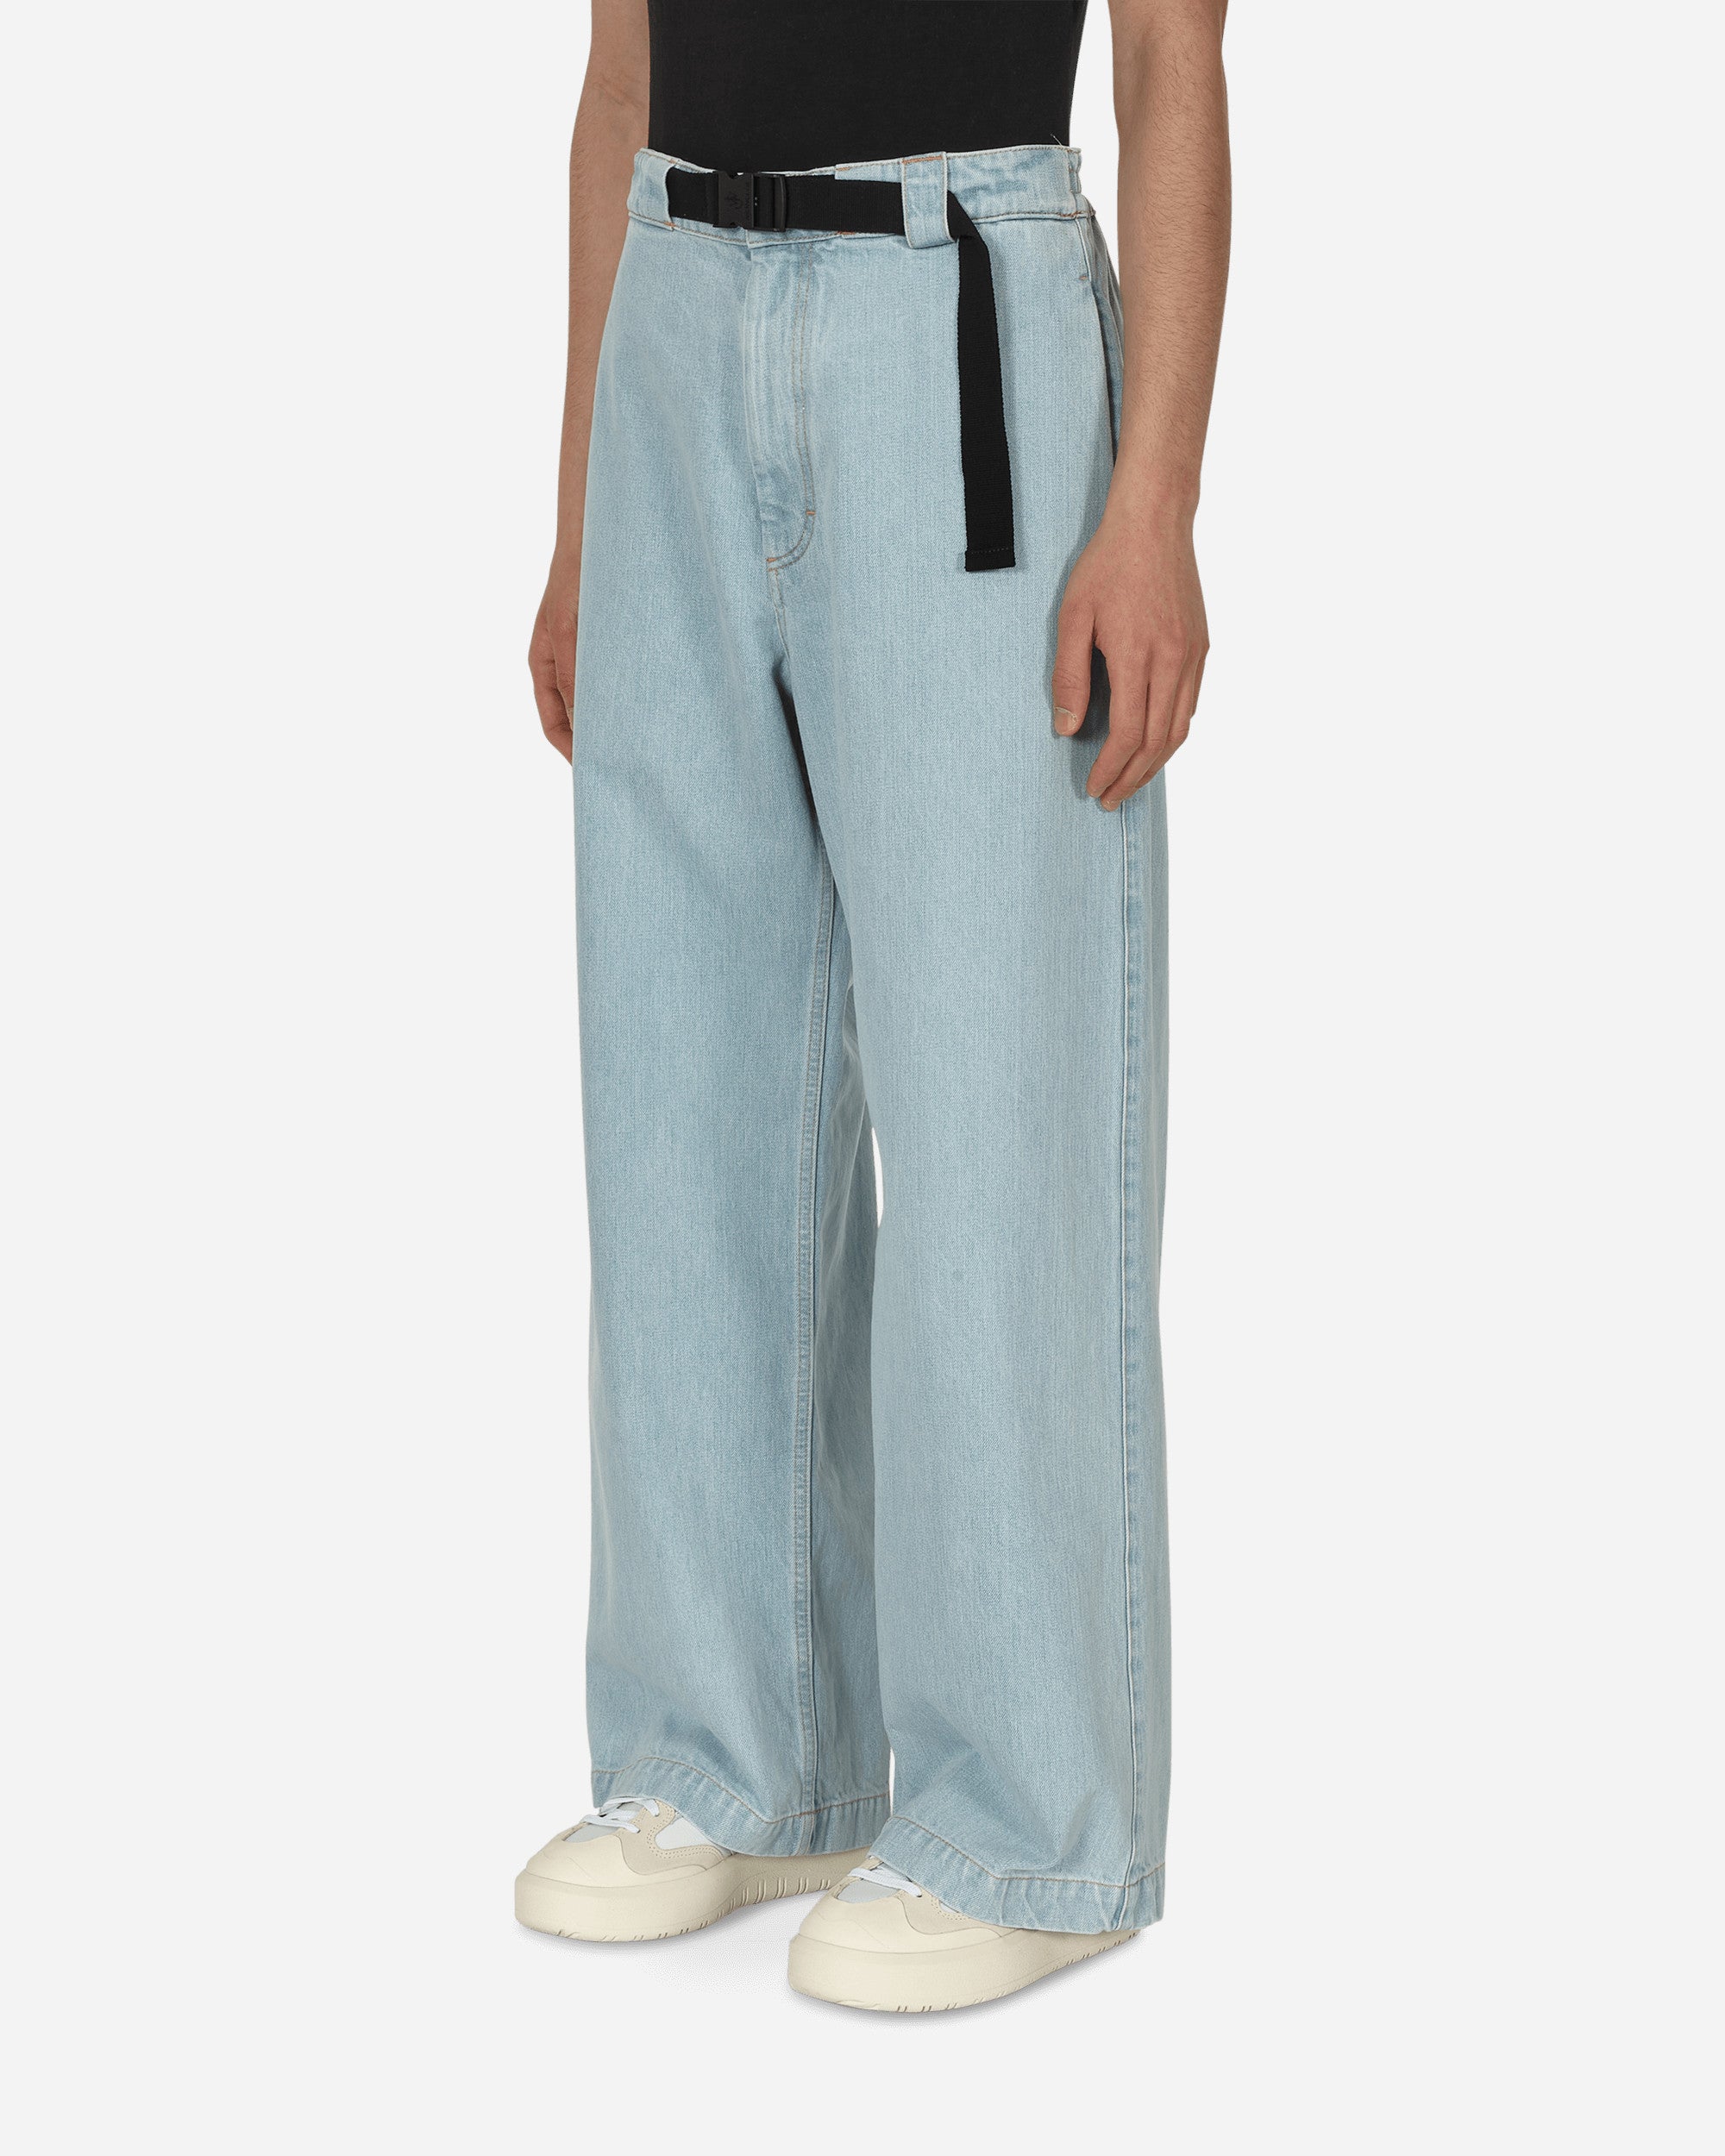 Moncler Genius Jwa Pantalone Navy Pants Trousers H209E2A00009 795